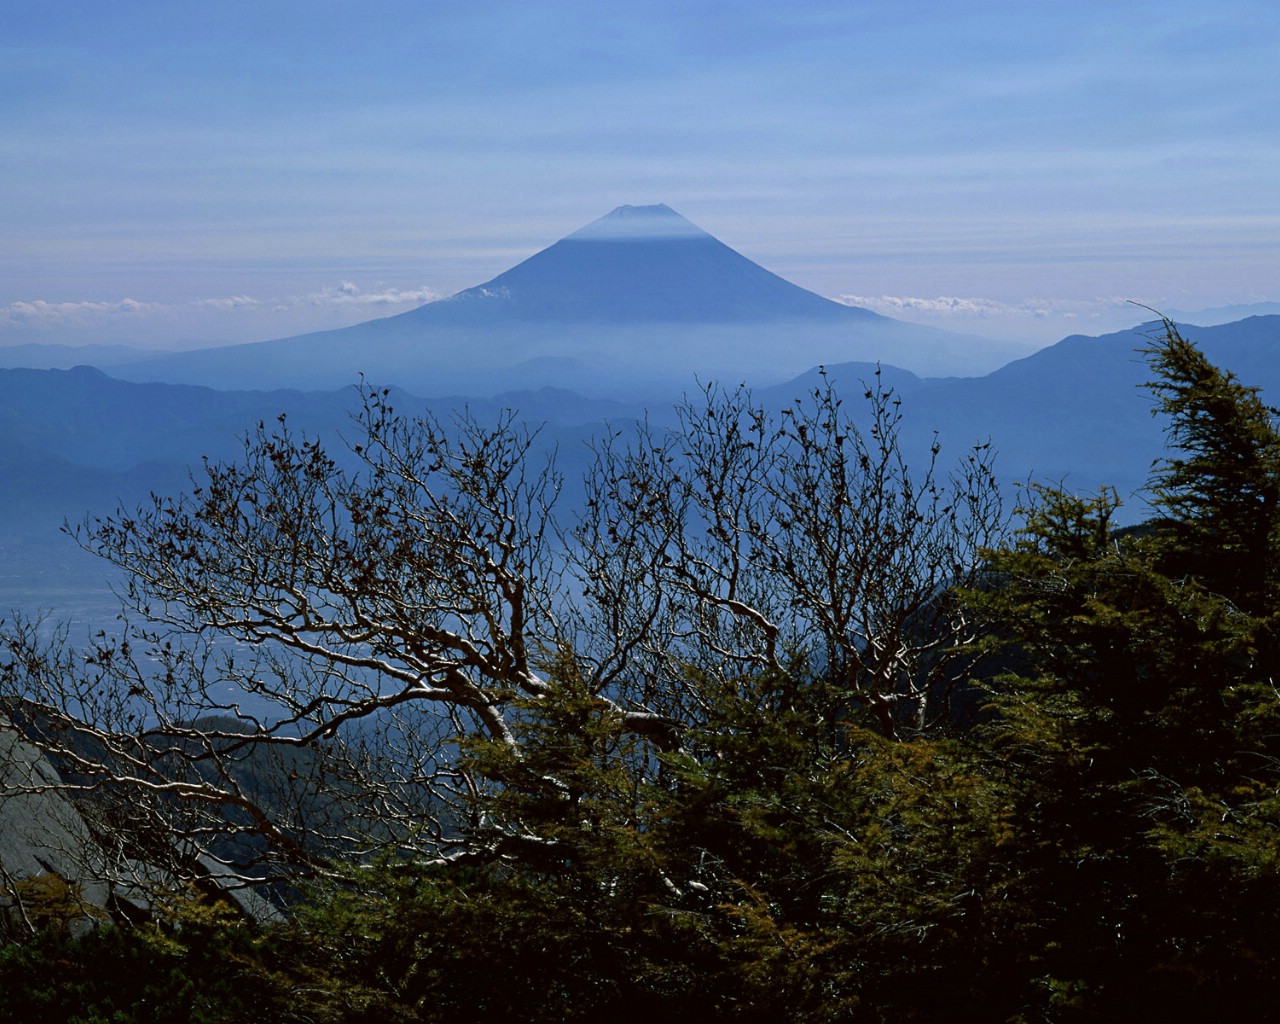 壁纸1280x1024富士山风光壁纸 富士山风光壁纸 富士山风光图片 富士山风光素材 风景壁纸 风景图库 风景图片素材桌面壁纸